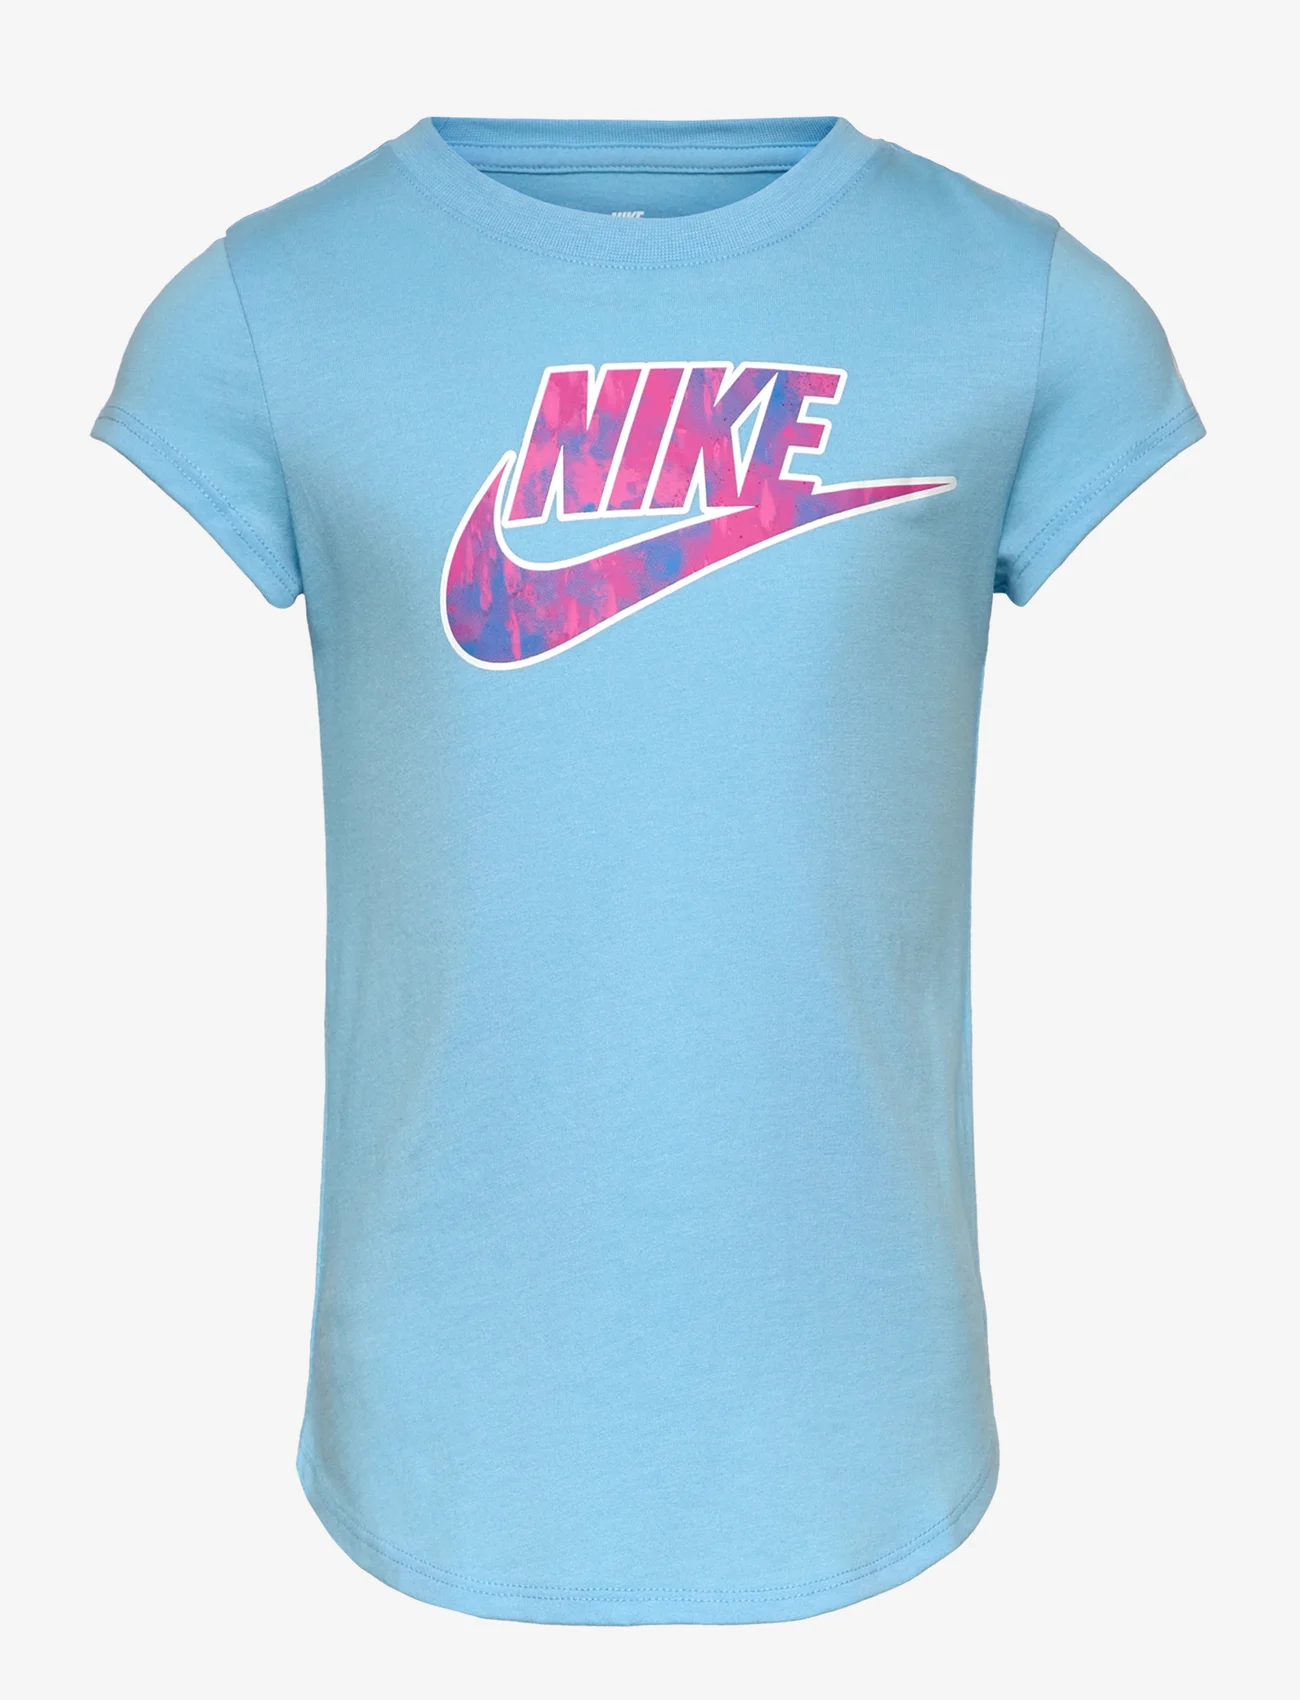 Nike - NKG PRINTED CLUB TEE / NKG PRINTED CLUB TEE - kurzärmelig - aquarius blue - 0